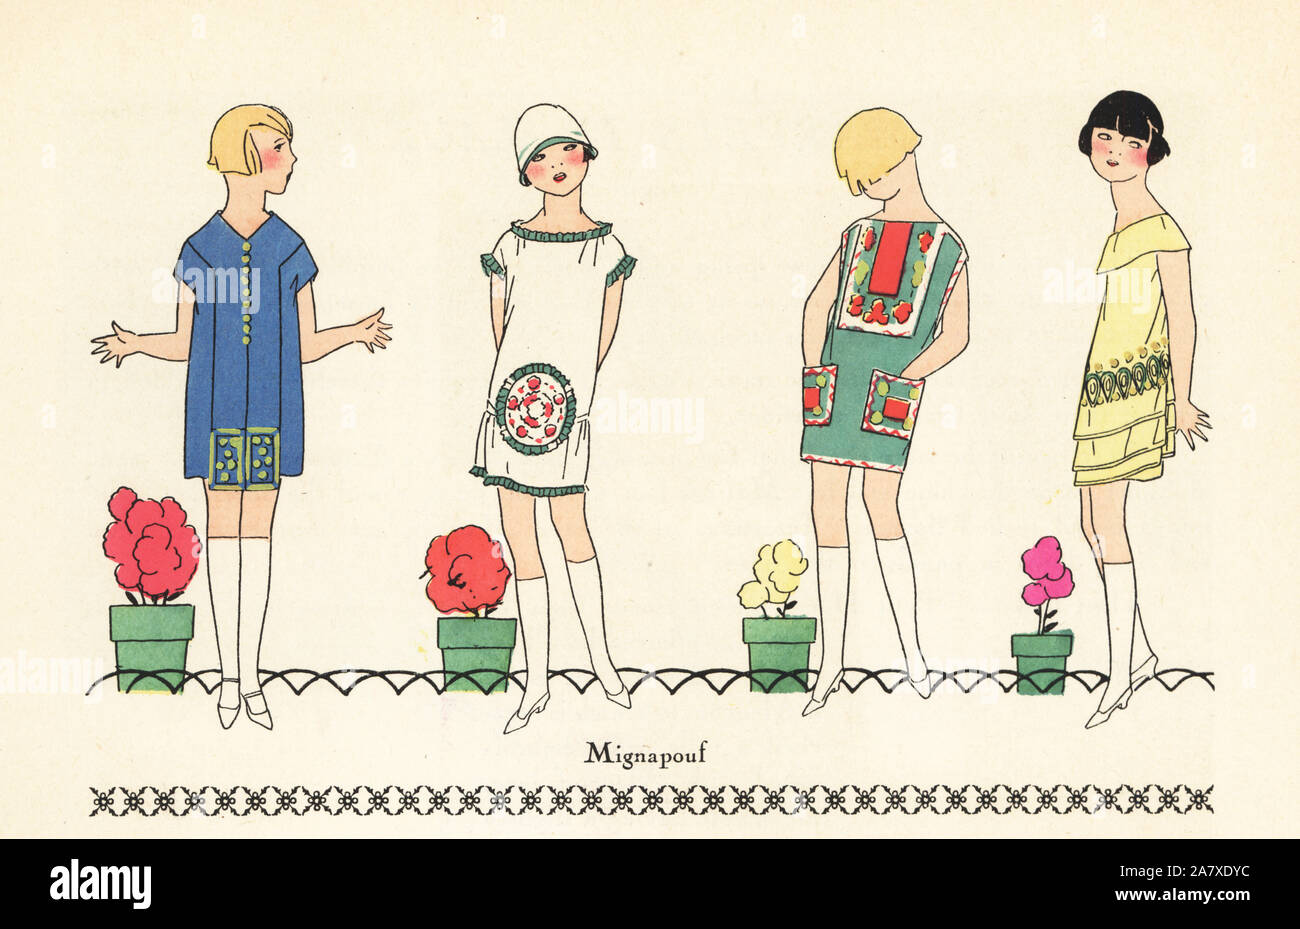 Junge Mädchen in kurzen Sommer Kleider in gedruckter Crepe. Papierkörbe pochoir (Schablone) Lithographie von der Französischen luxus Mode Magazin Kunst, Gicht, Beauté, 1925. Stockfoto